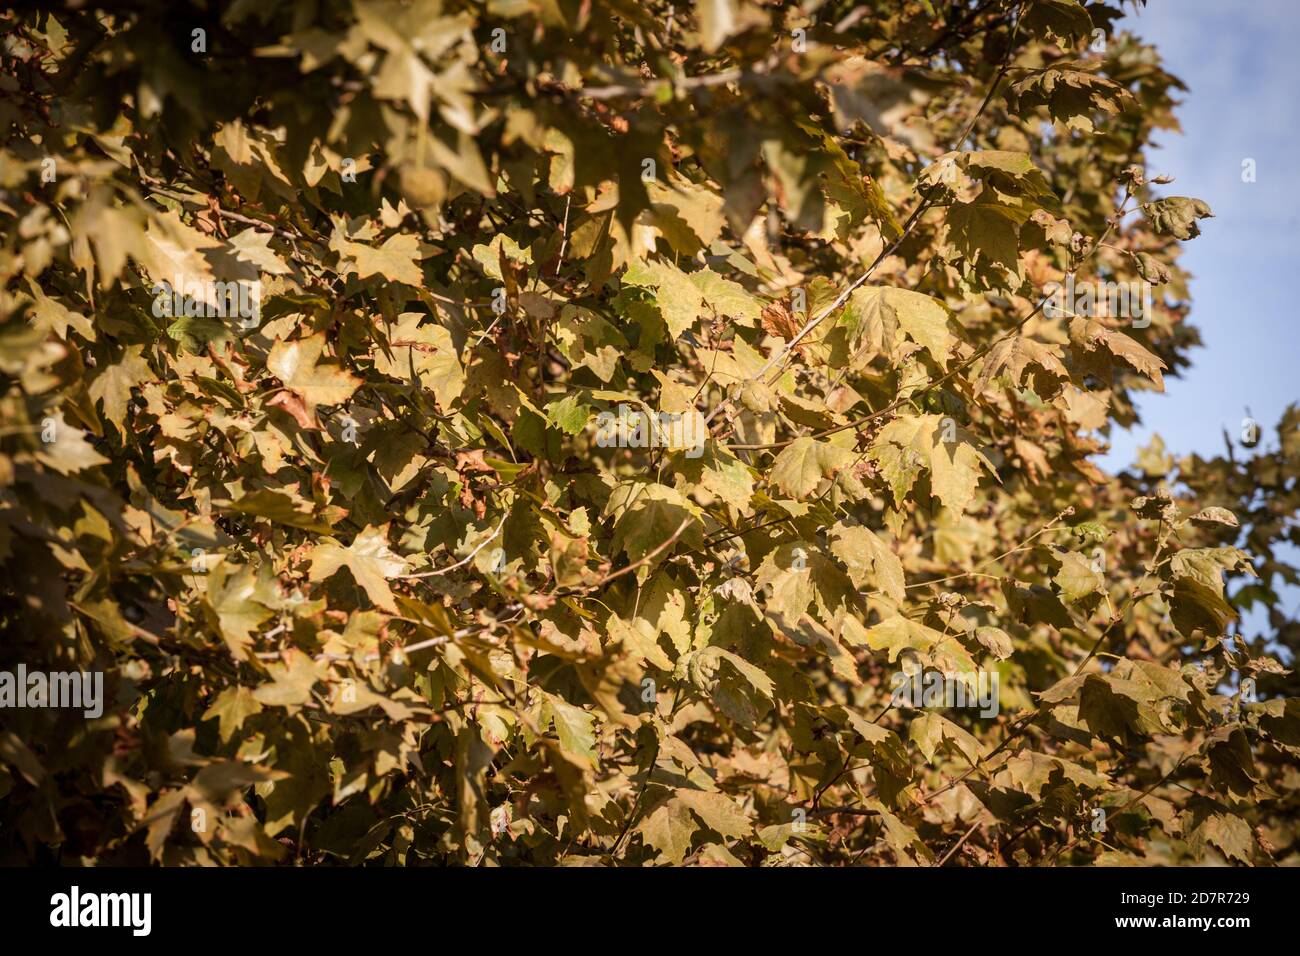 Gros plan sur un rabot avec ses feuilles sèches jaunes et brunes, en automne. Aussi connu sous le nom de sycomore, ou platanus, l'arbre est un symbole de chute dans le norther Banque D'Images